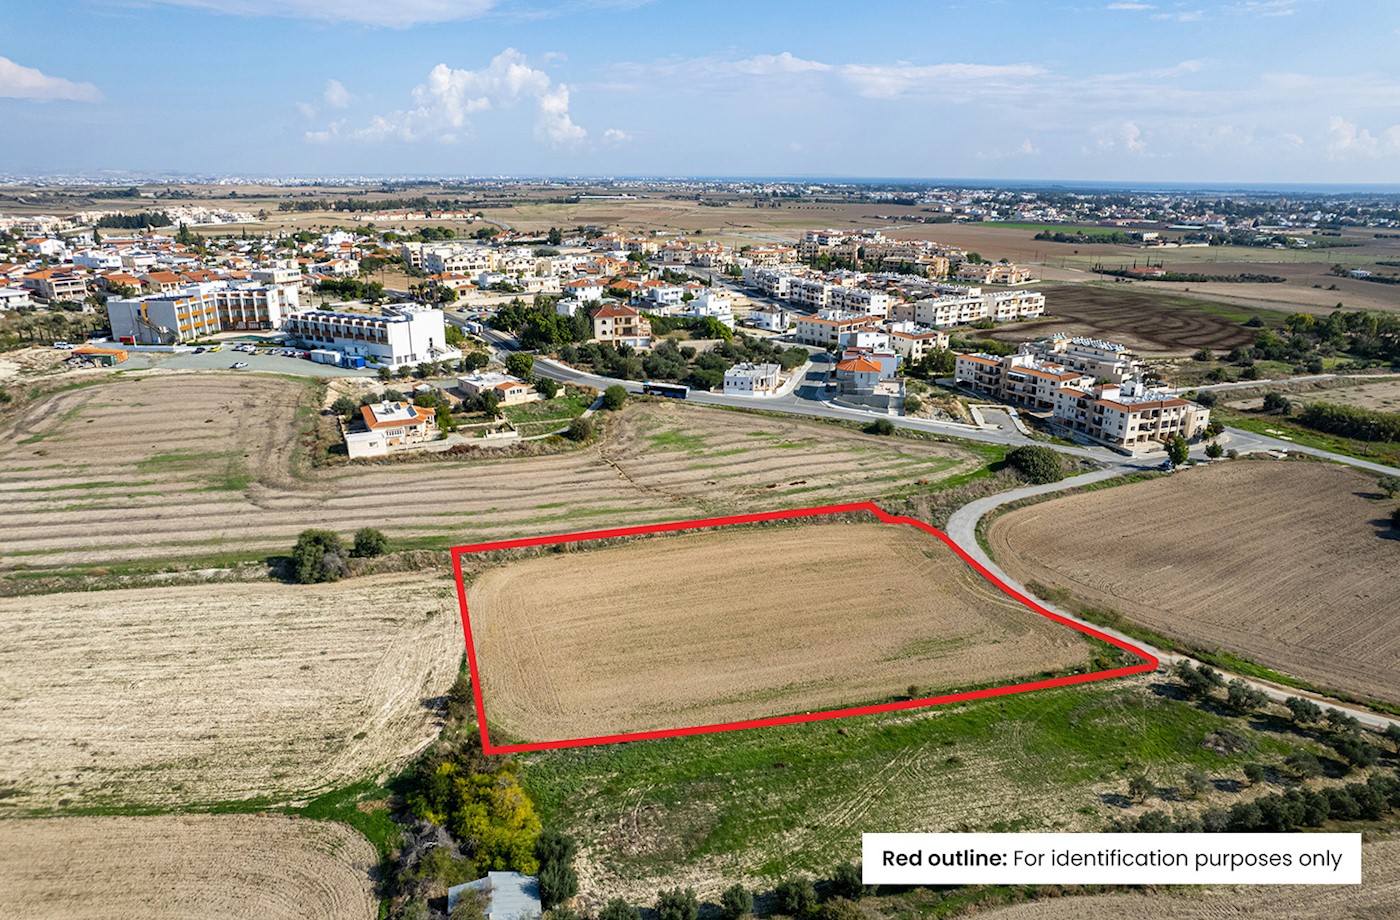 Residential field in Tersefanou, Larnaca 1/4